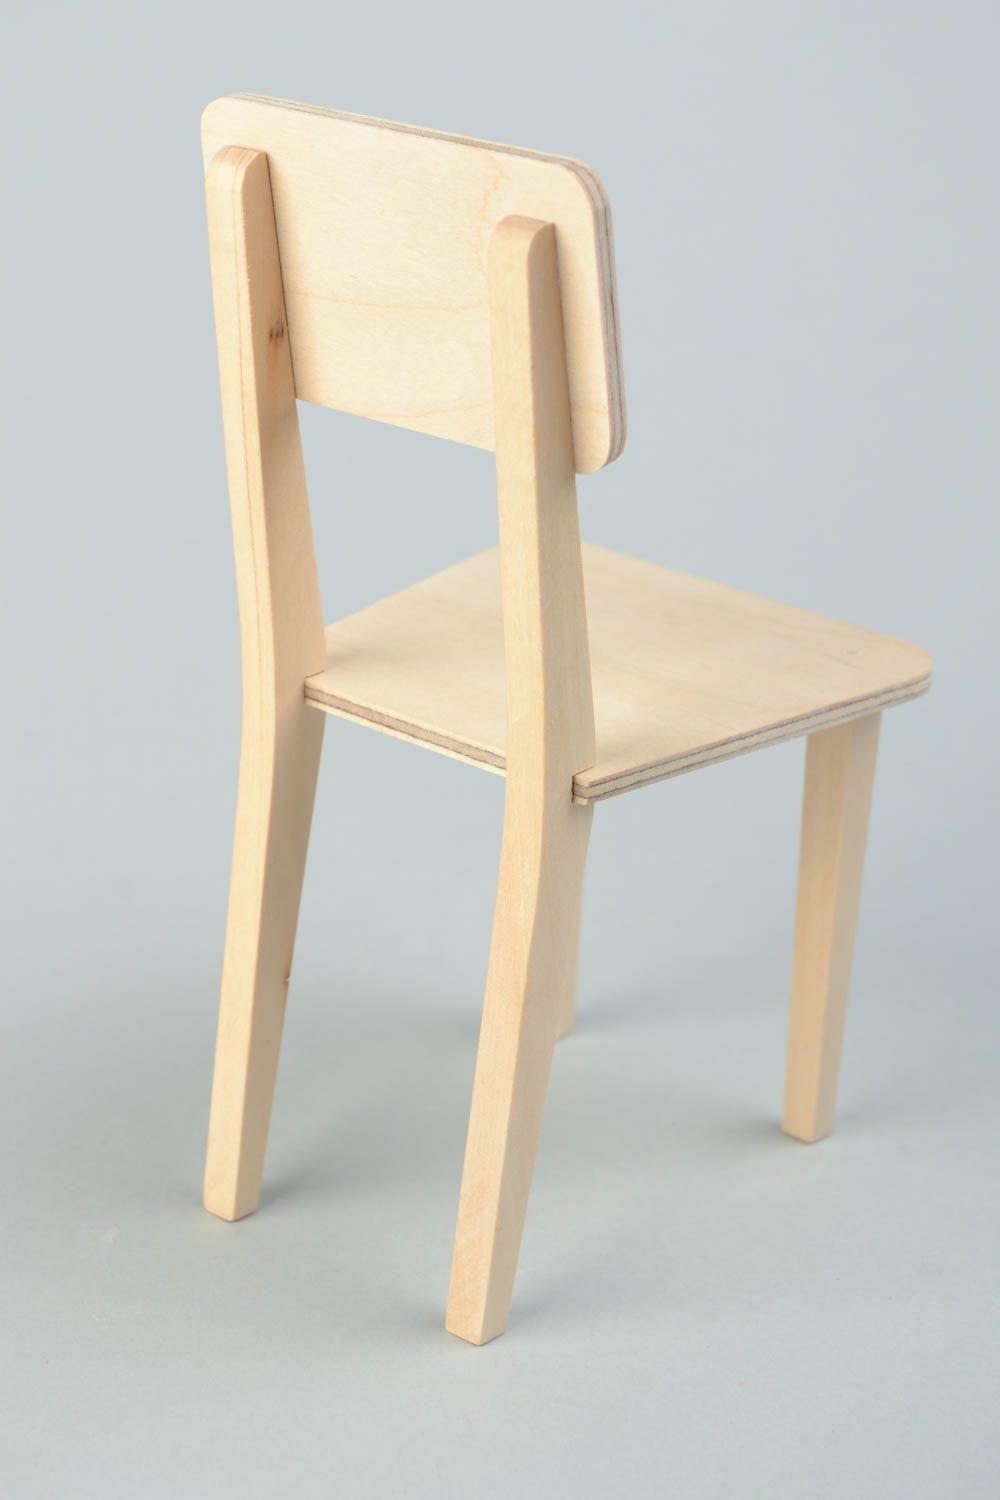 Puppenmöbel aus Holz Rohling zum Bemalen und für Decoupage handmade Stuhl foto 5